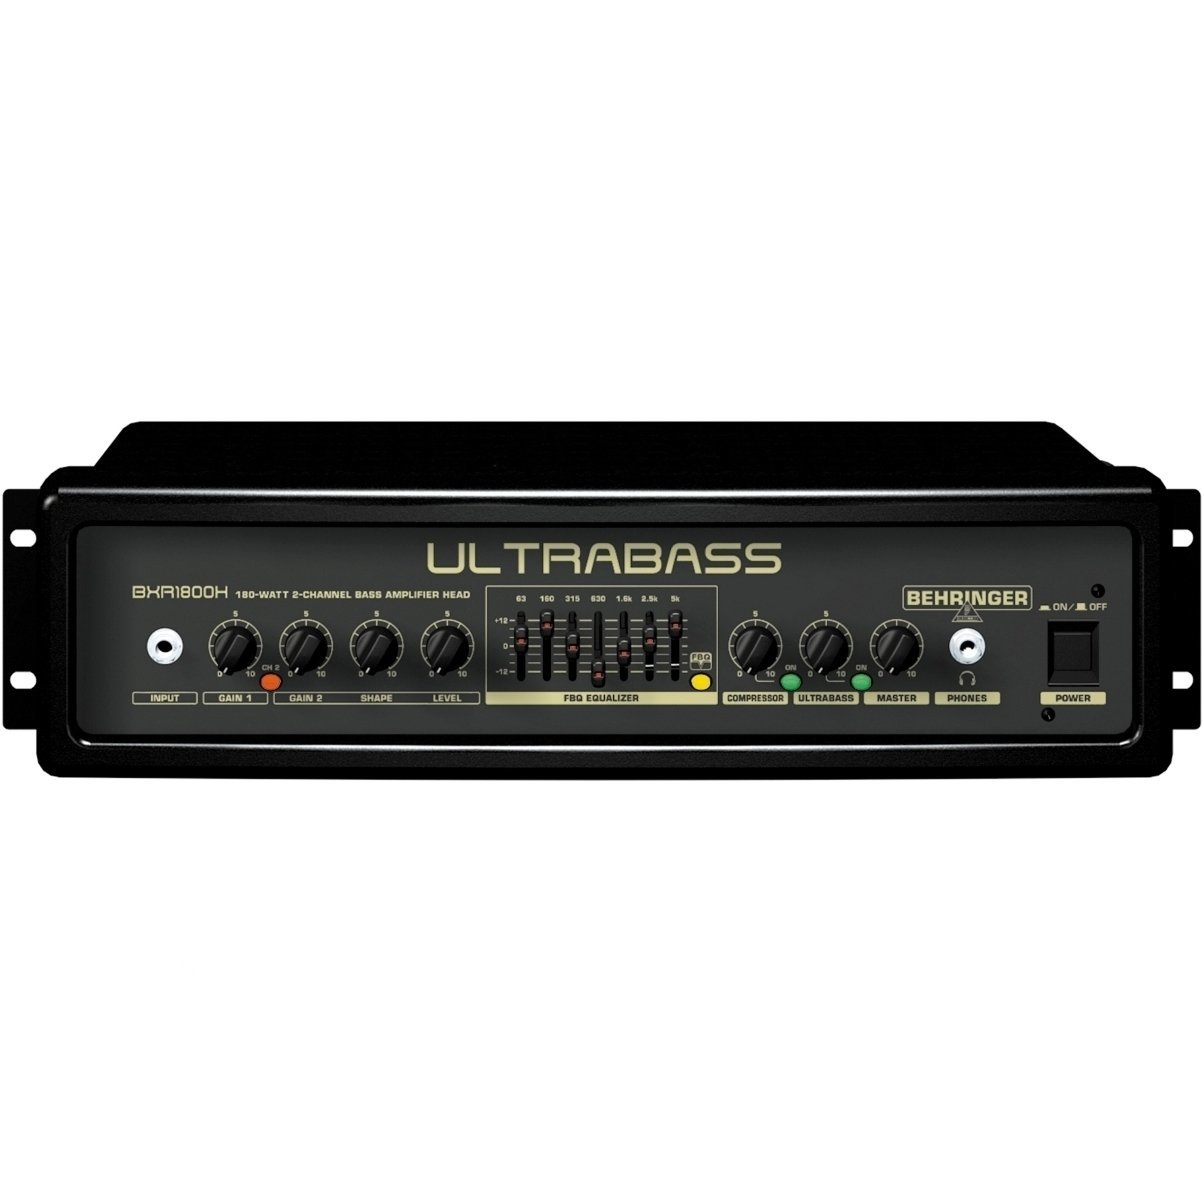 Transistor Bassverstärker Behringer BXR 1800 H ULTRABASS